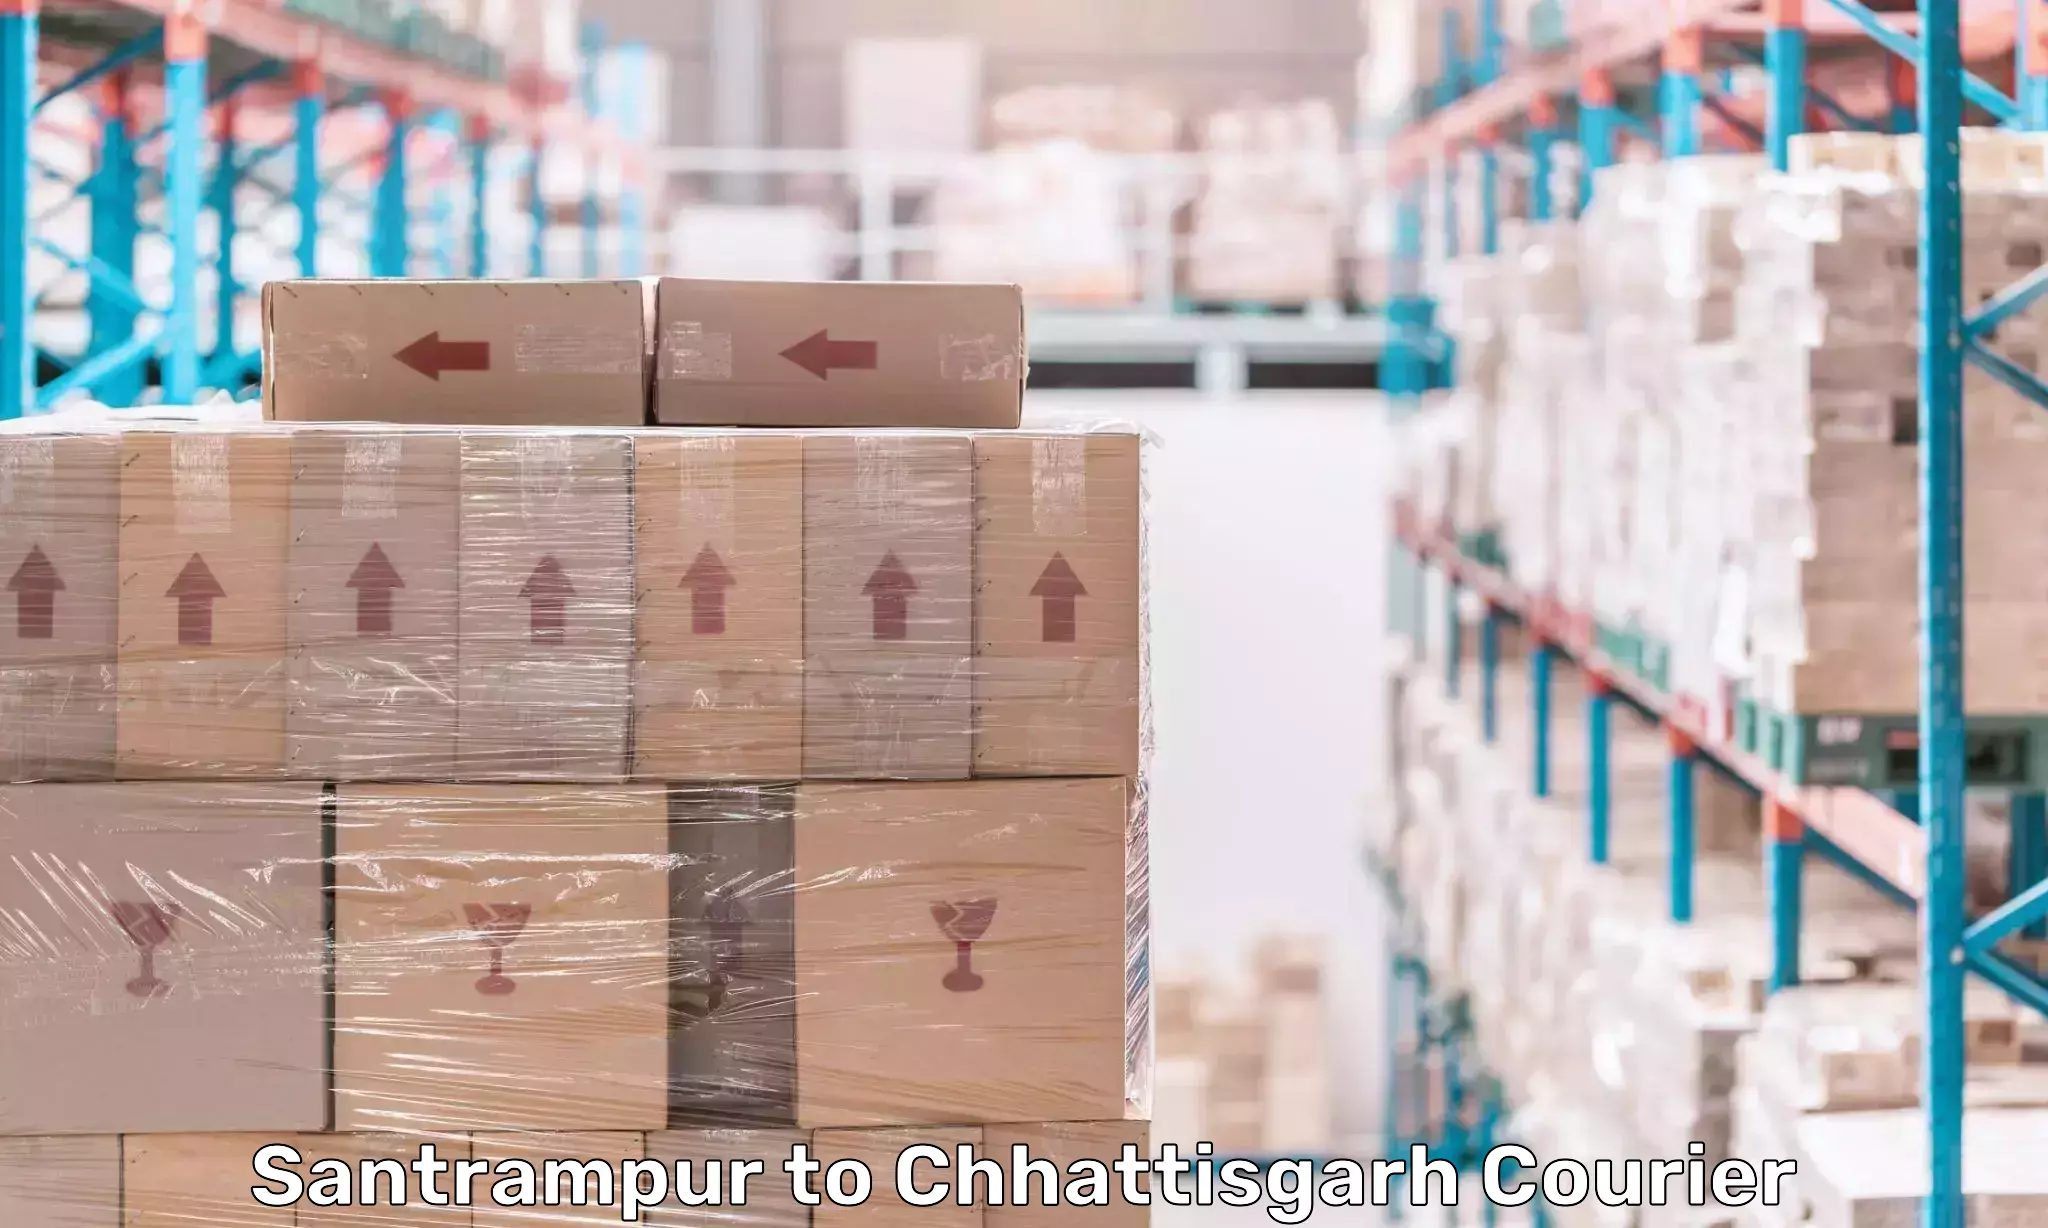 Cargo delivery service Santrampur to Korea Chhattisgarh